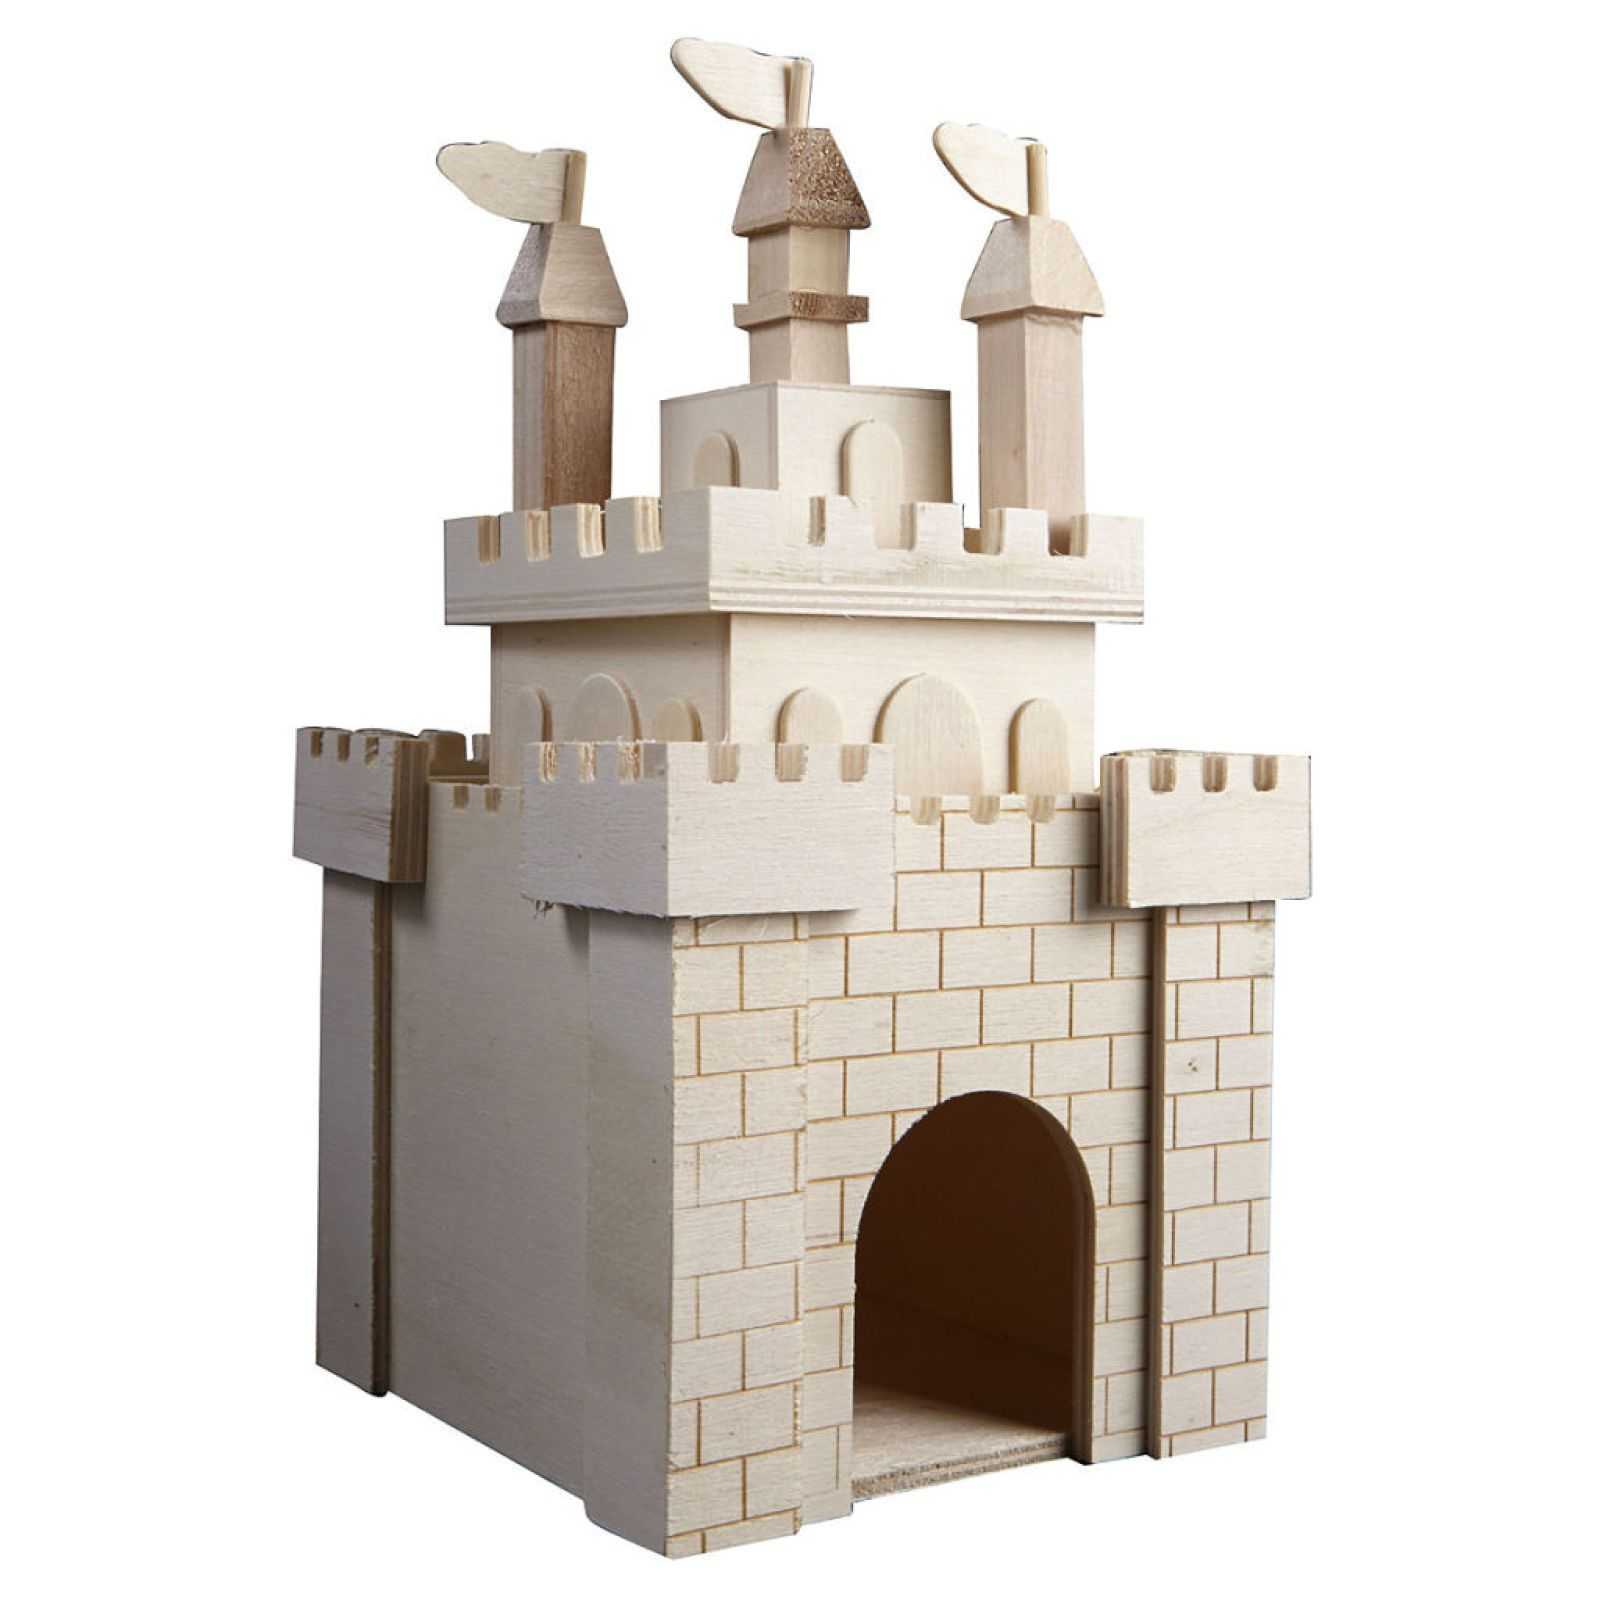 Замок на даче – легко! декоративный замок для сада своими руками.подробно,фото,чертежи каменный замок своими руками